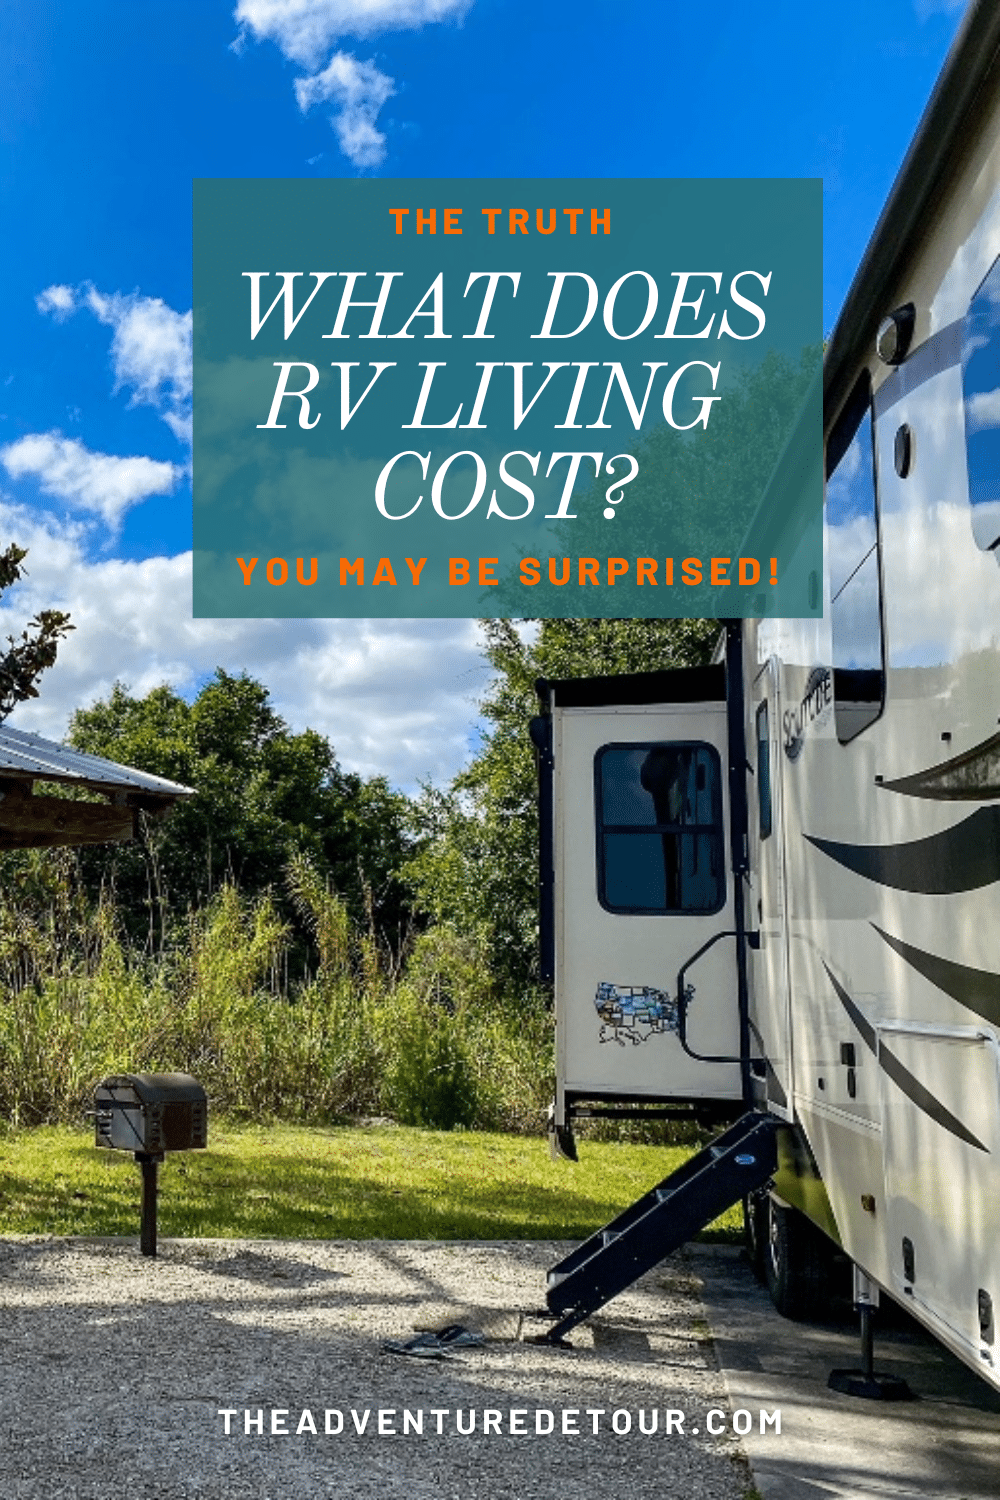 RV in campsite - cost of RV living